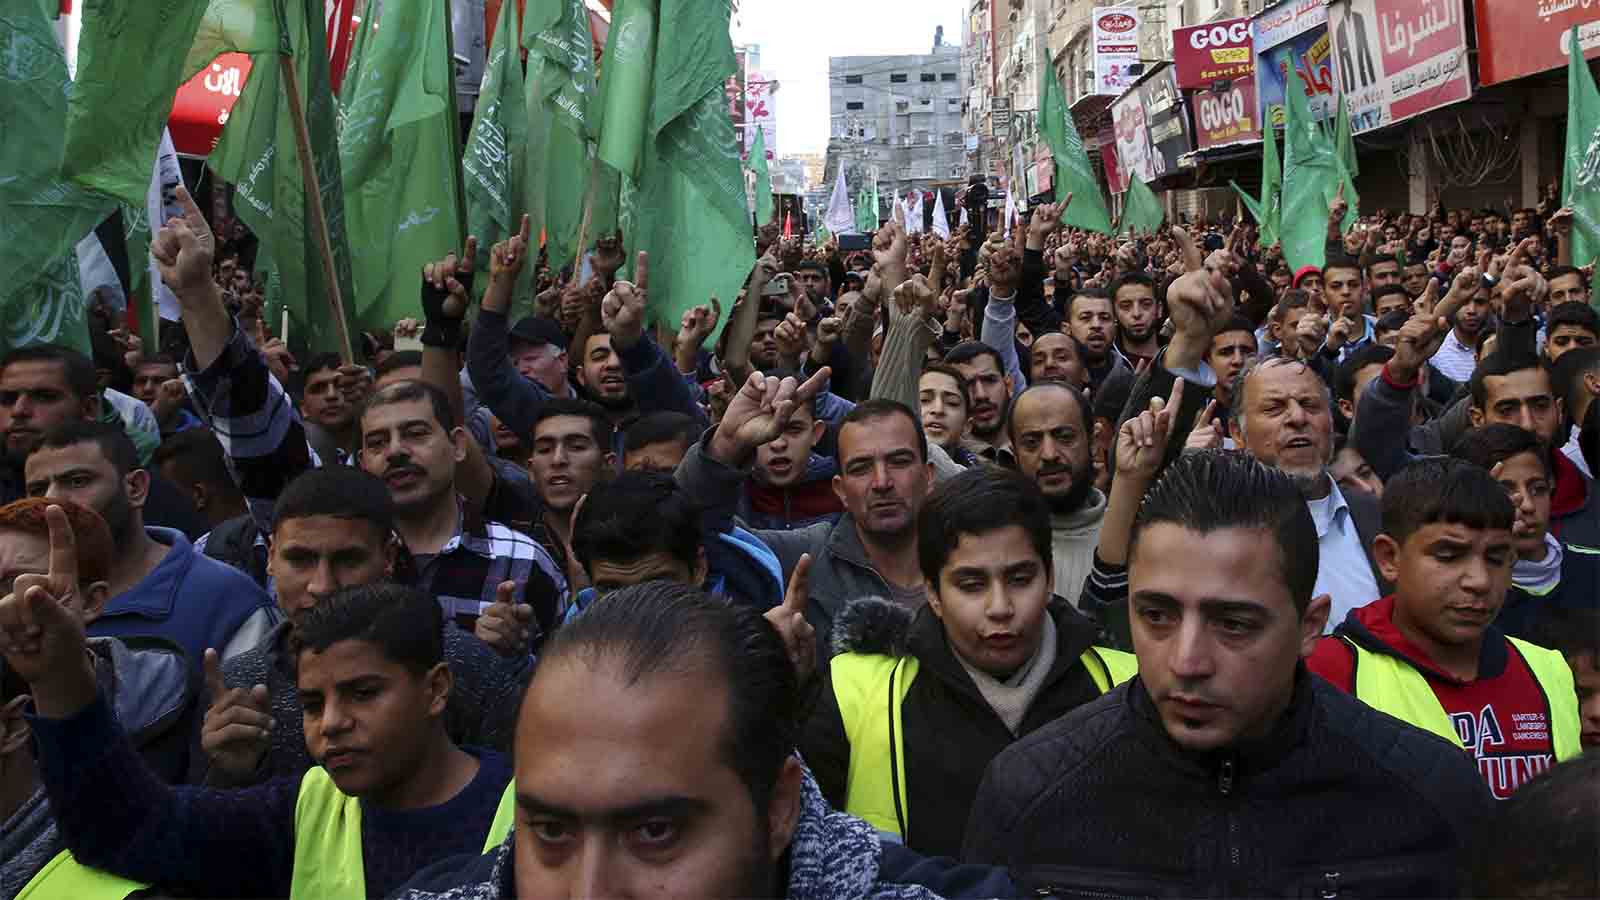 מפגינים בעזה עם דגלי חמאס בתגובה להכרזת טראמפ 8 בדצמבר (צילום: AP Photo/Adel Hana)